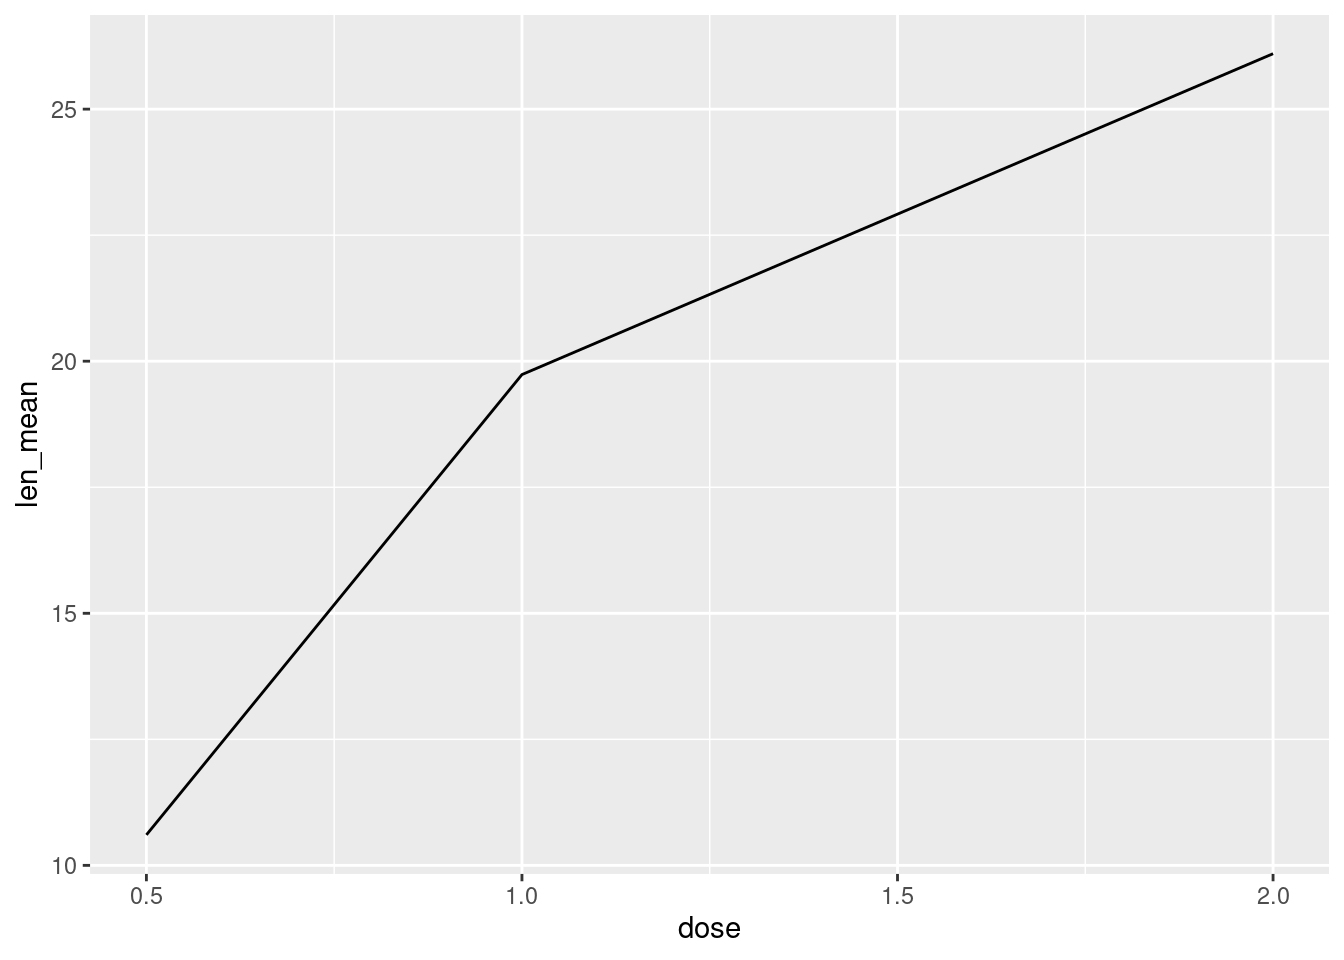 Gráfico de linhas entre a dose de vitamina C e comprimento de odontoblastos de porquinhos da Índia. A dose, por ser uma variável numérica, é plotada no eixo x e é possível utilizar linhas para ligar os pontos.